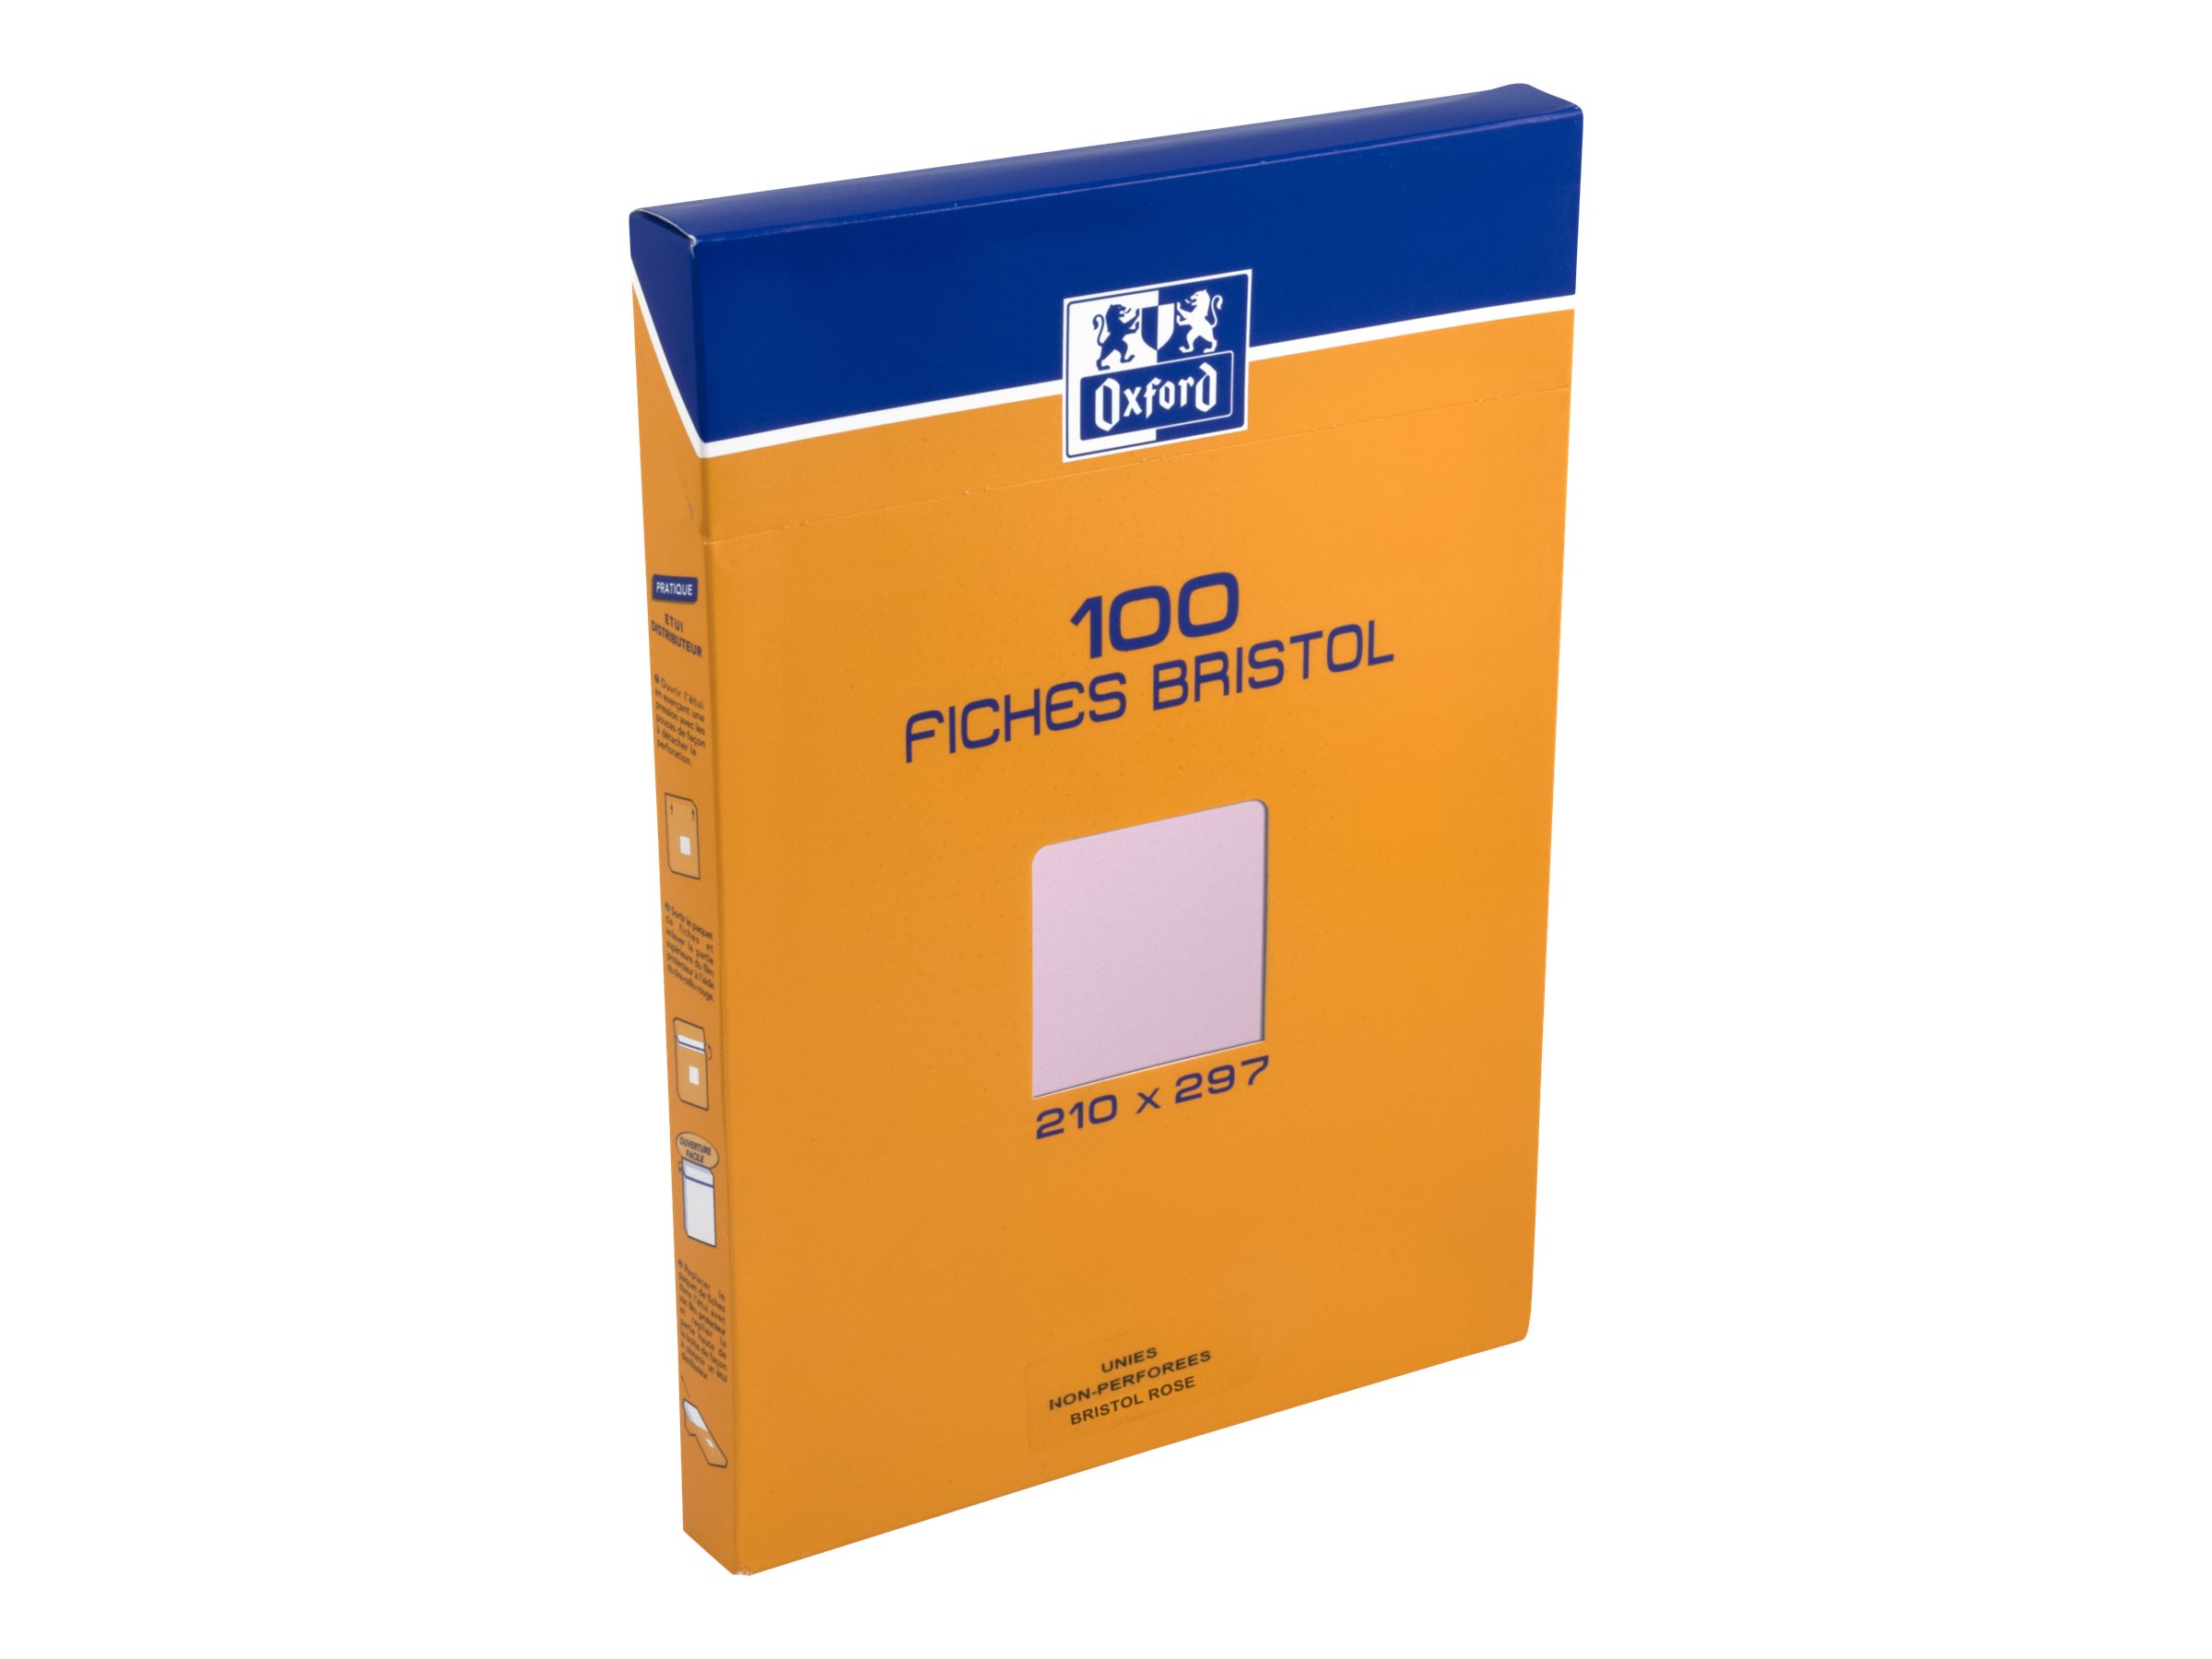 OXFORD Boîte distributrice 100 fiches bristol perforées format